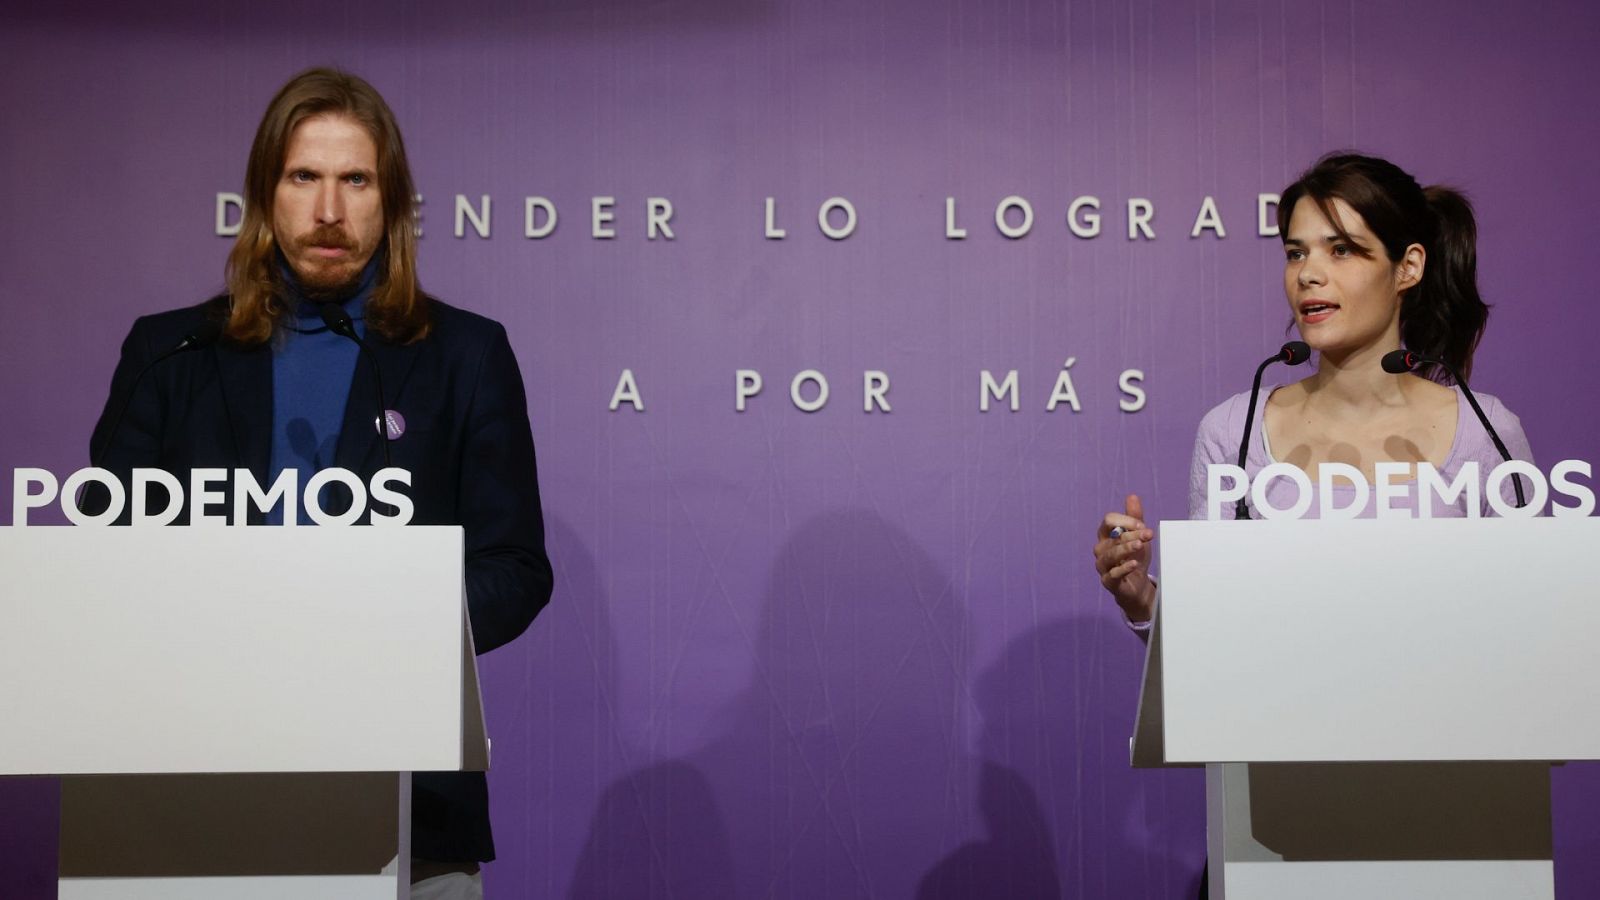 Los portavoces de Podemos Isa Serra y Pablo Fernández